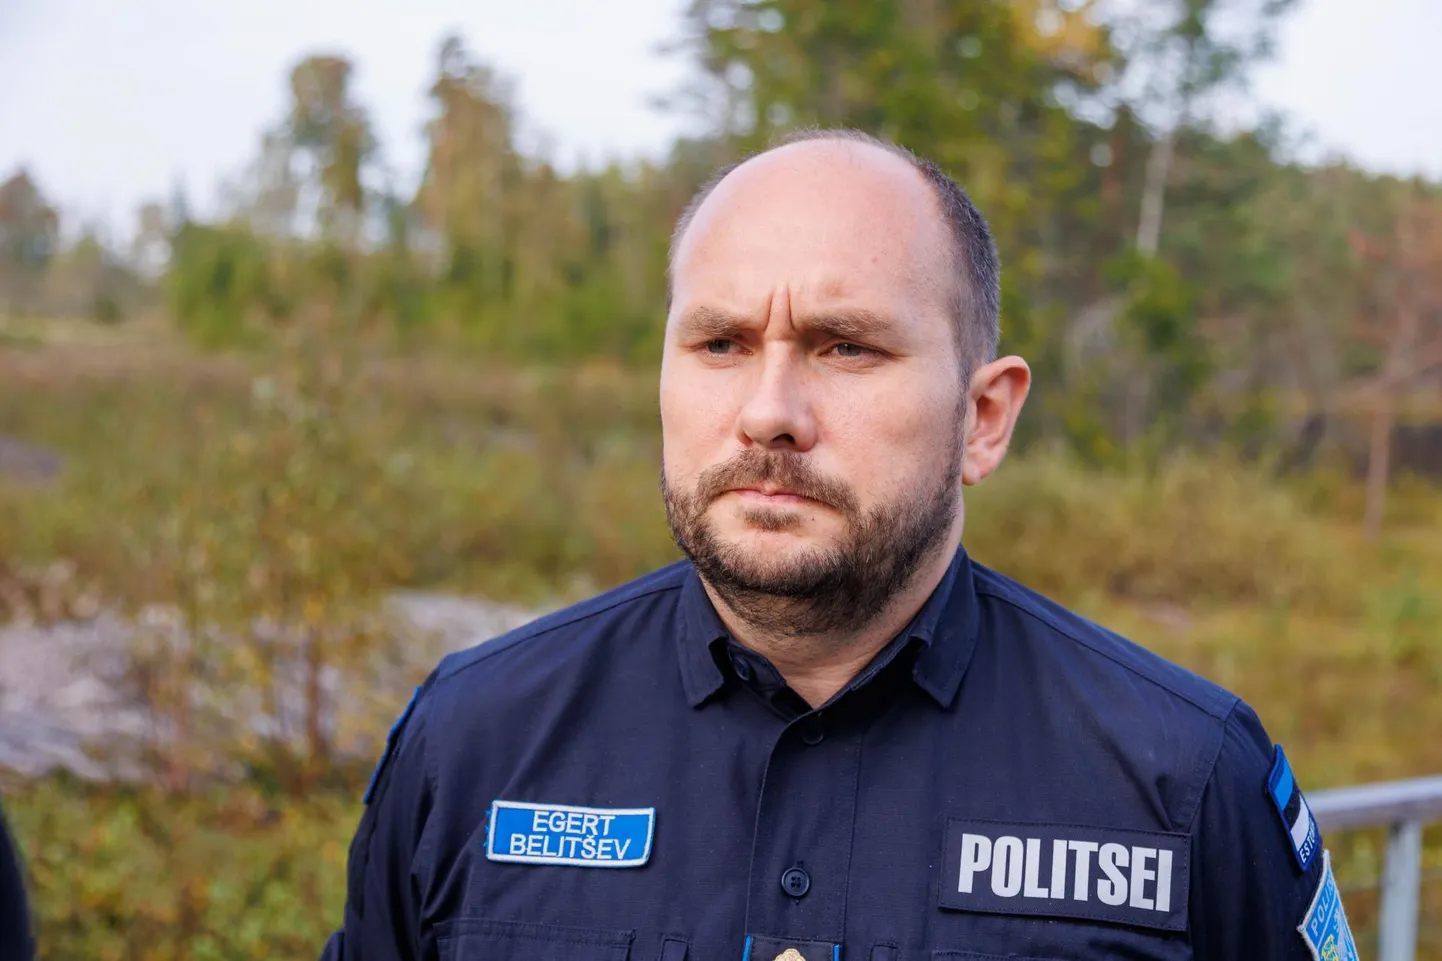 Politsei- ja piirivalveameti peadirektor Egert Belitšev.